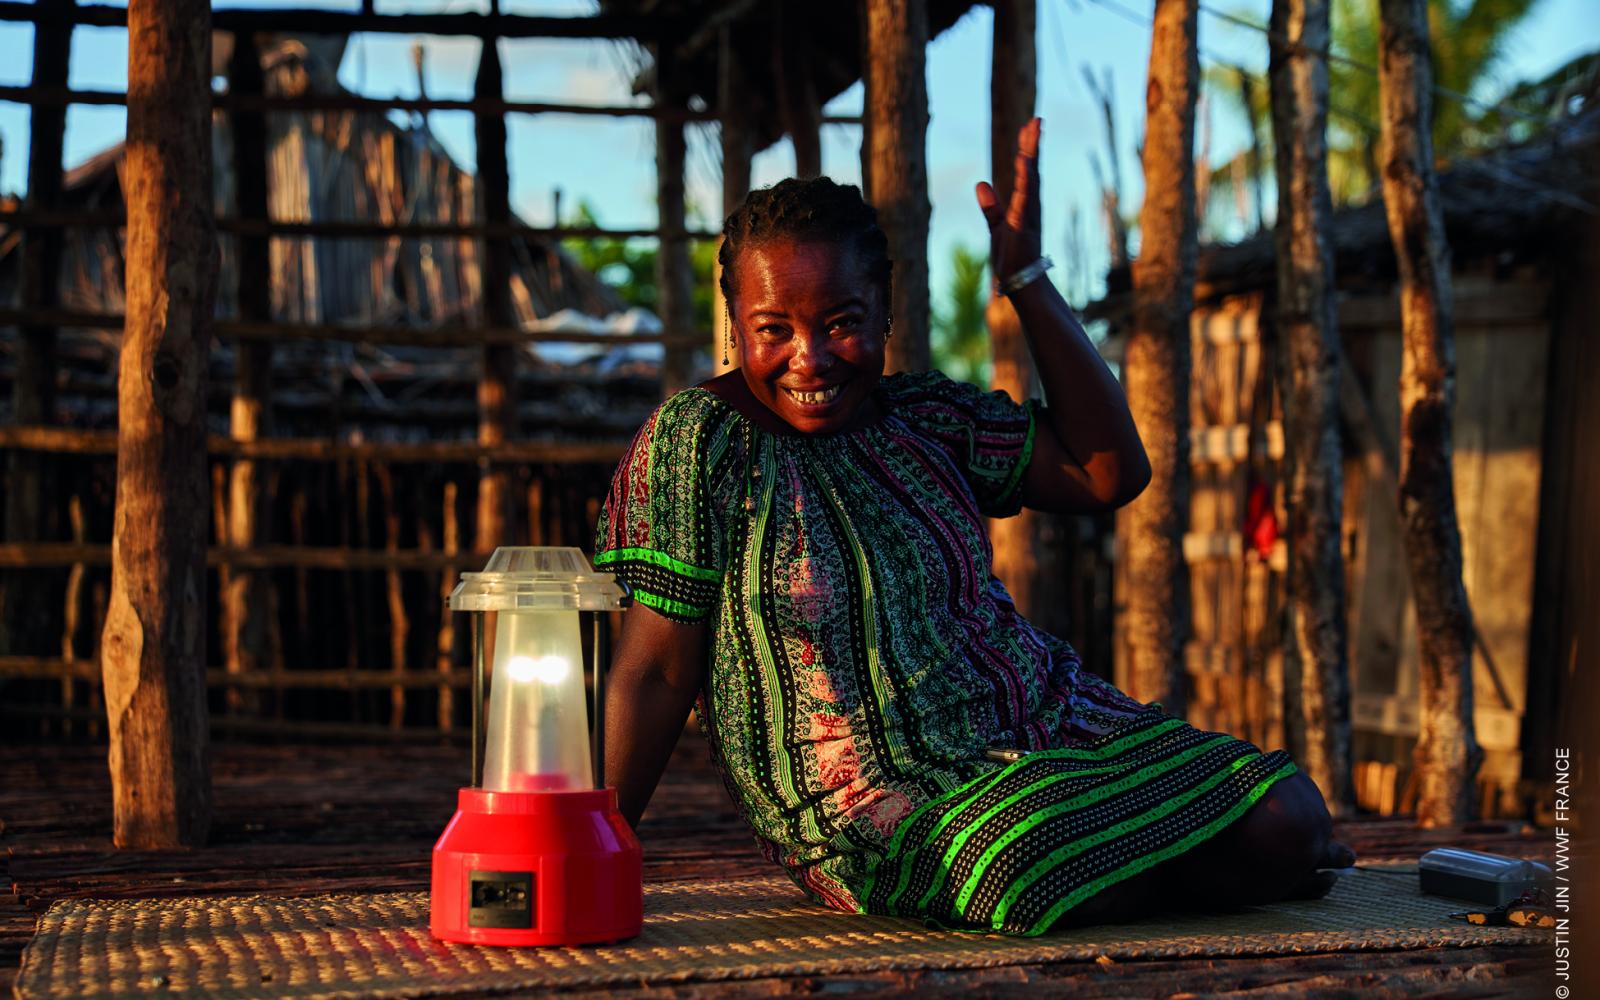 Une grand-mère "solaire" de retour du barefoot college en Inde est assise à côté d'une lampe LED (Madagascar)